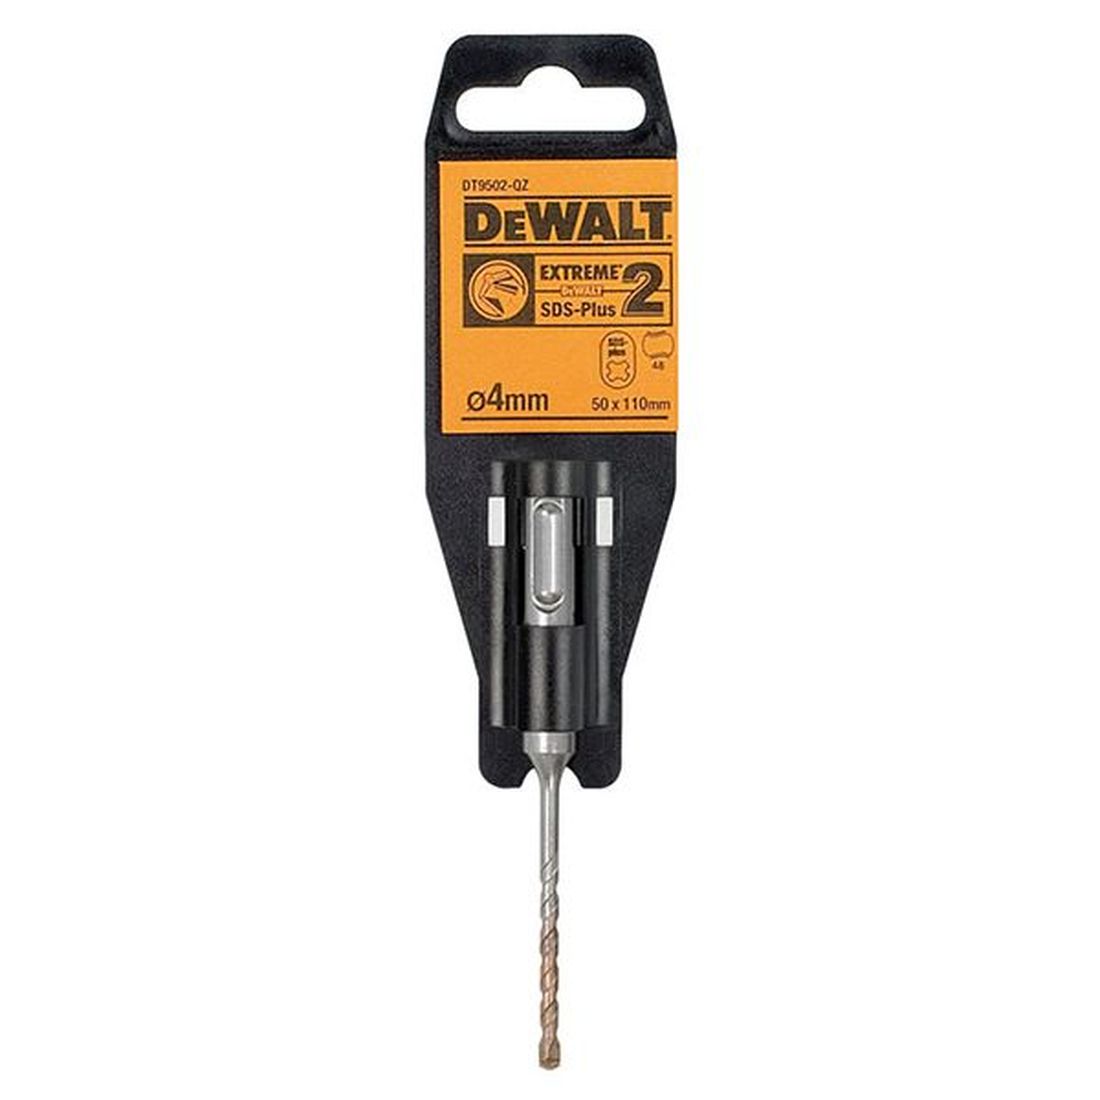 DEWALT SDS Plus EXTREME 2 Drill Bit 4 x 110mm                                         